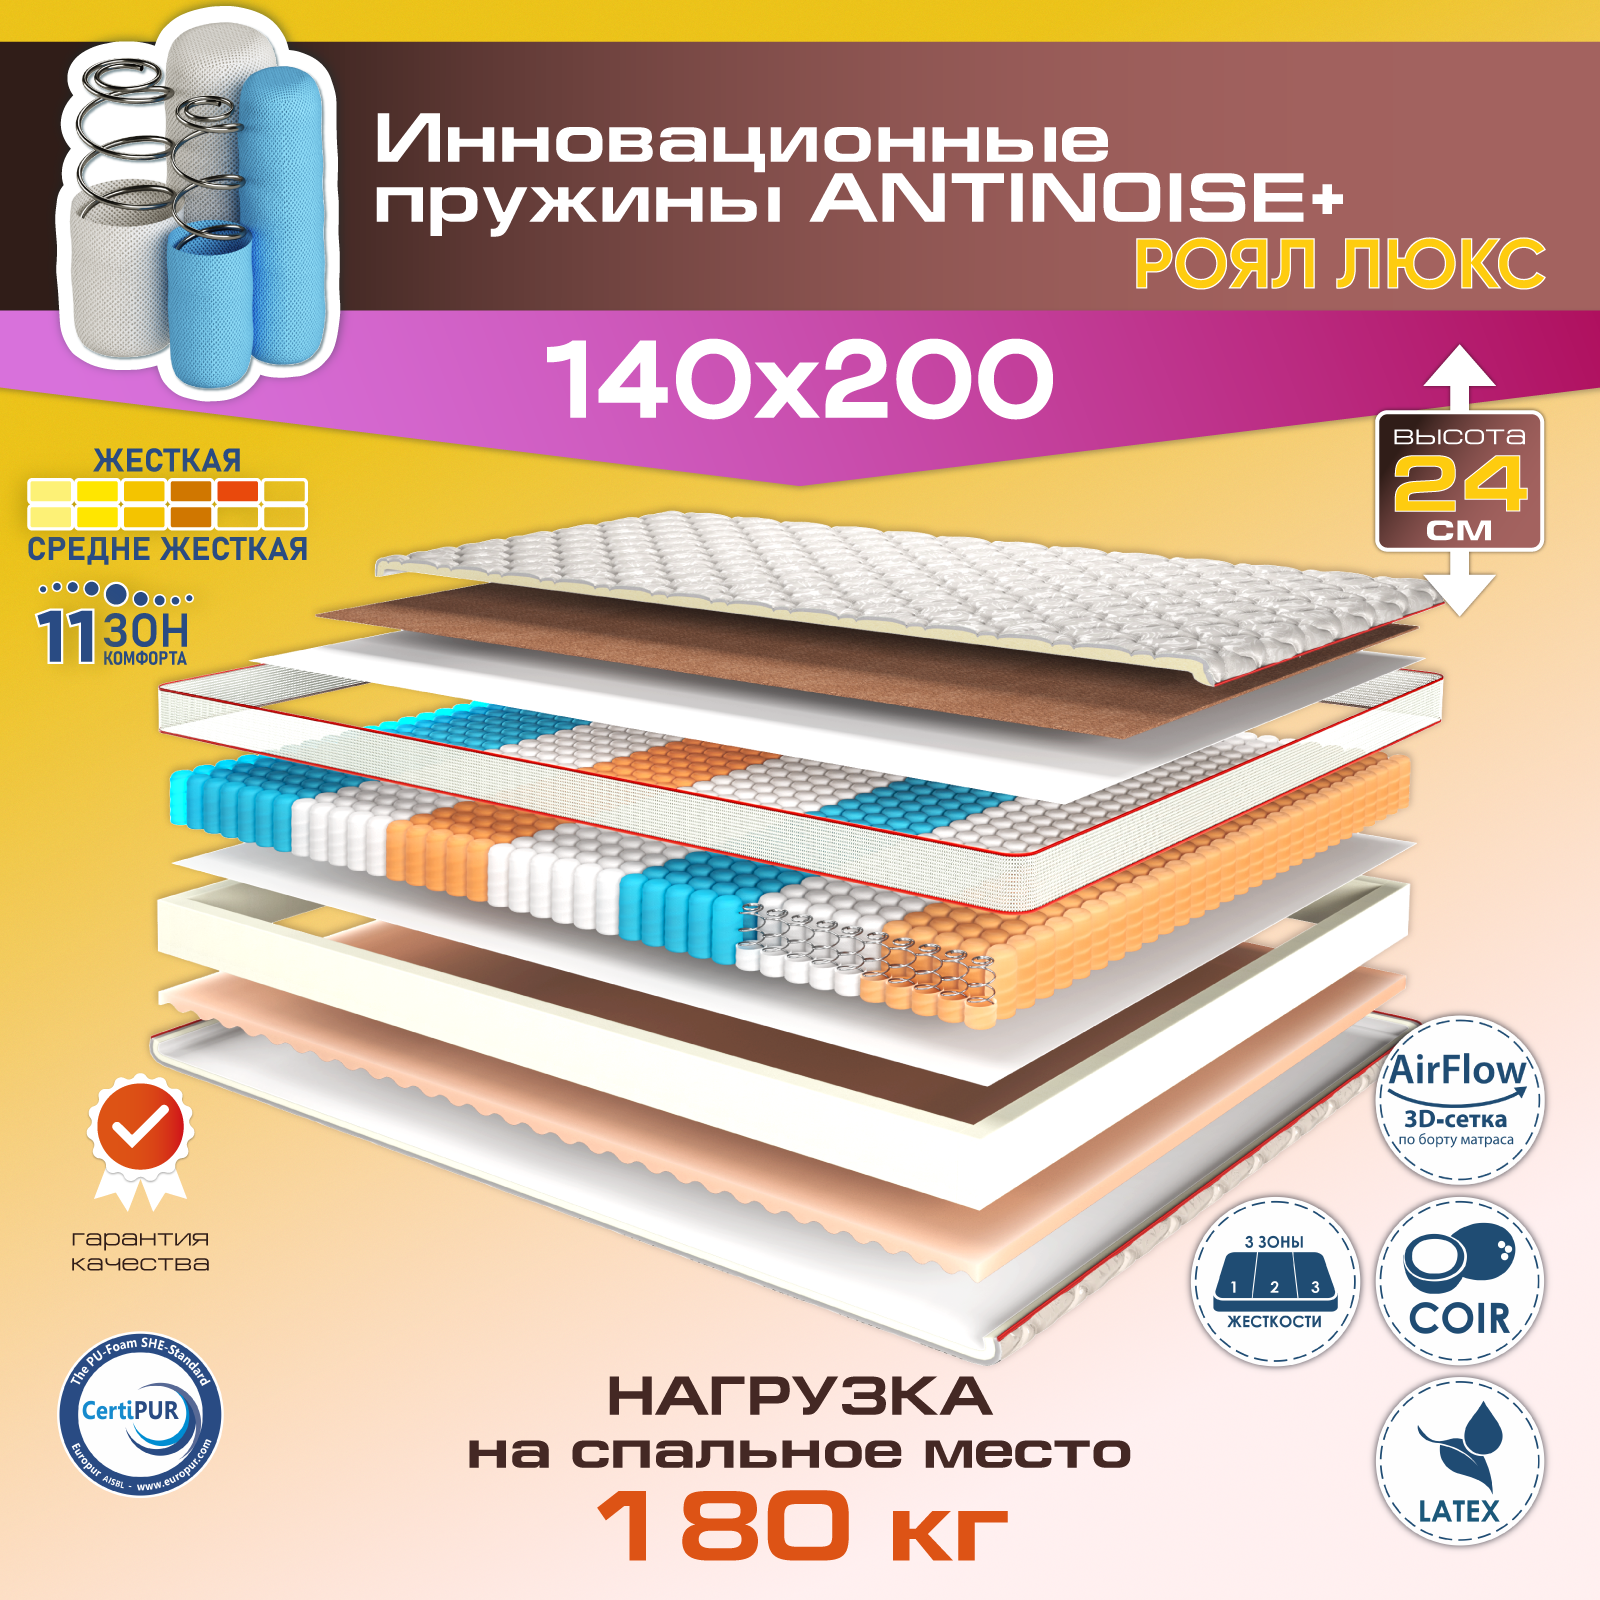 Матрас для кровати 140х200 см Роял Люкс, независимый пружинный блок, 11 зон комфорта, 24 см высота, в развернутом виде, АМИ мебель, Беларусь